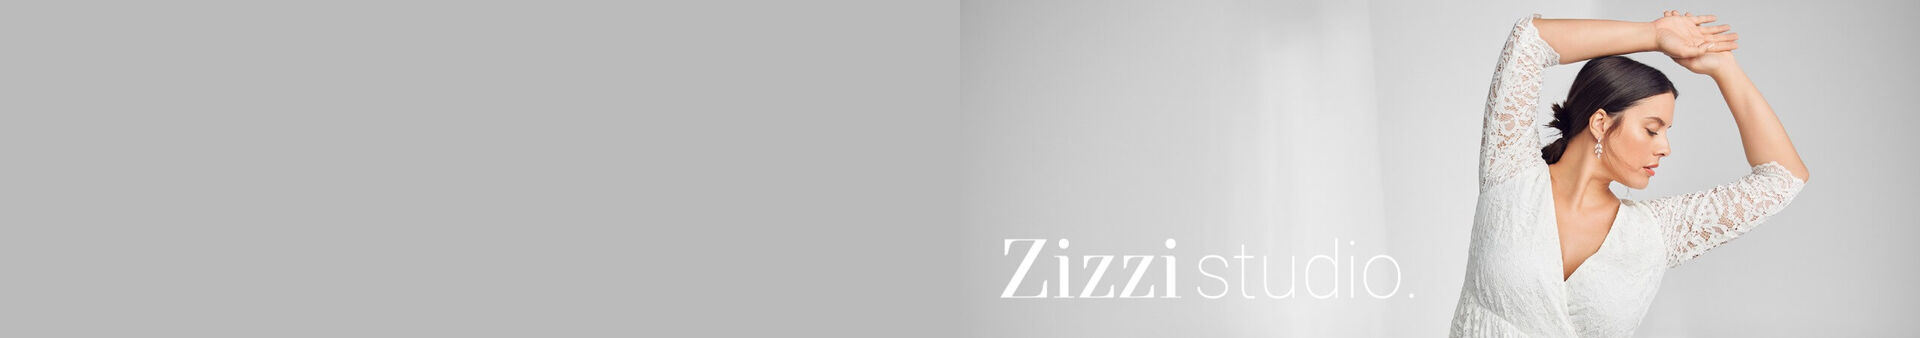 Vêtements de mariage femmes grandes tailles - Taille 42-60 - Zizzi